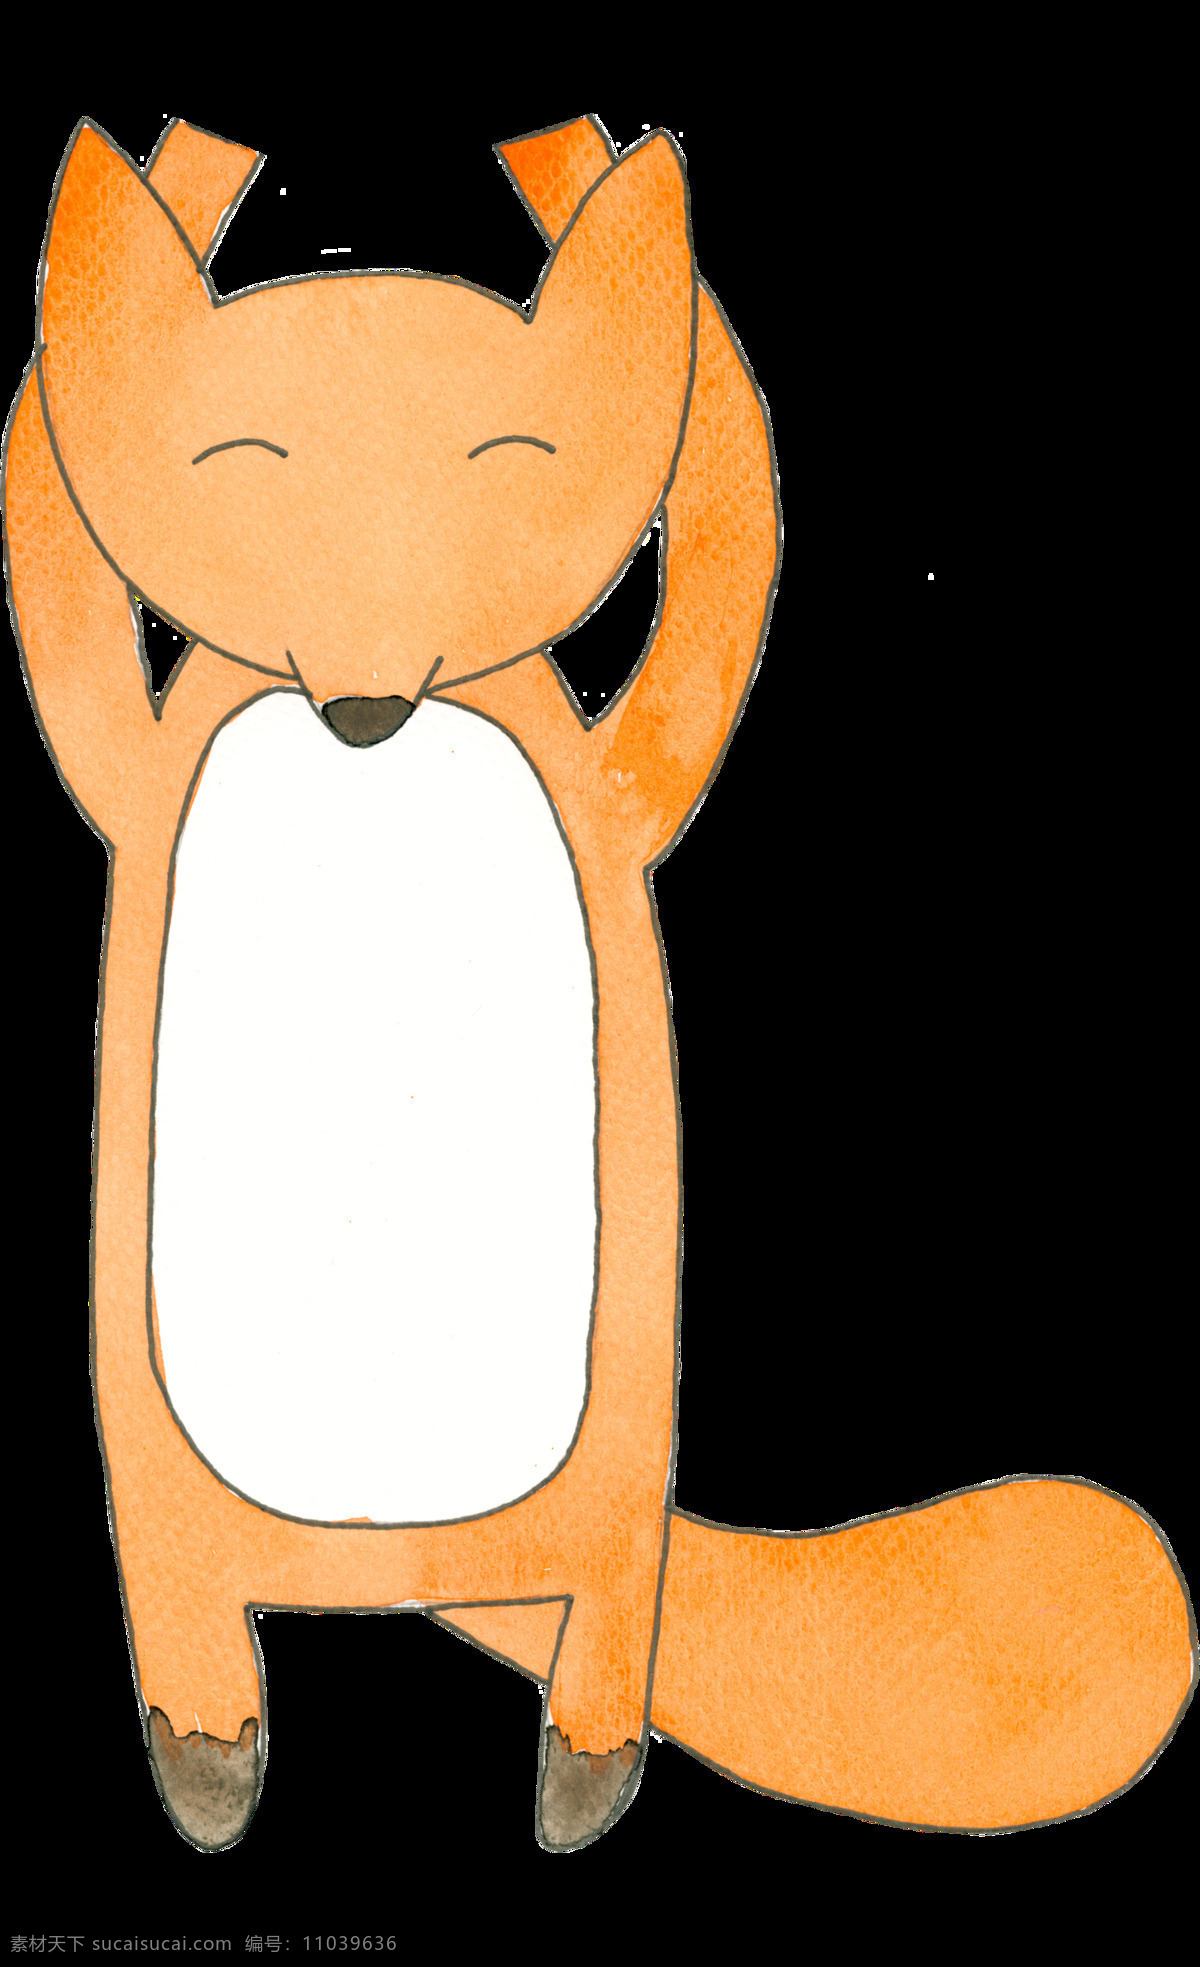 卡通 狐狸 透明 手绘 橙色 矢量素材 设计素材